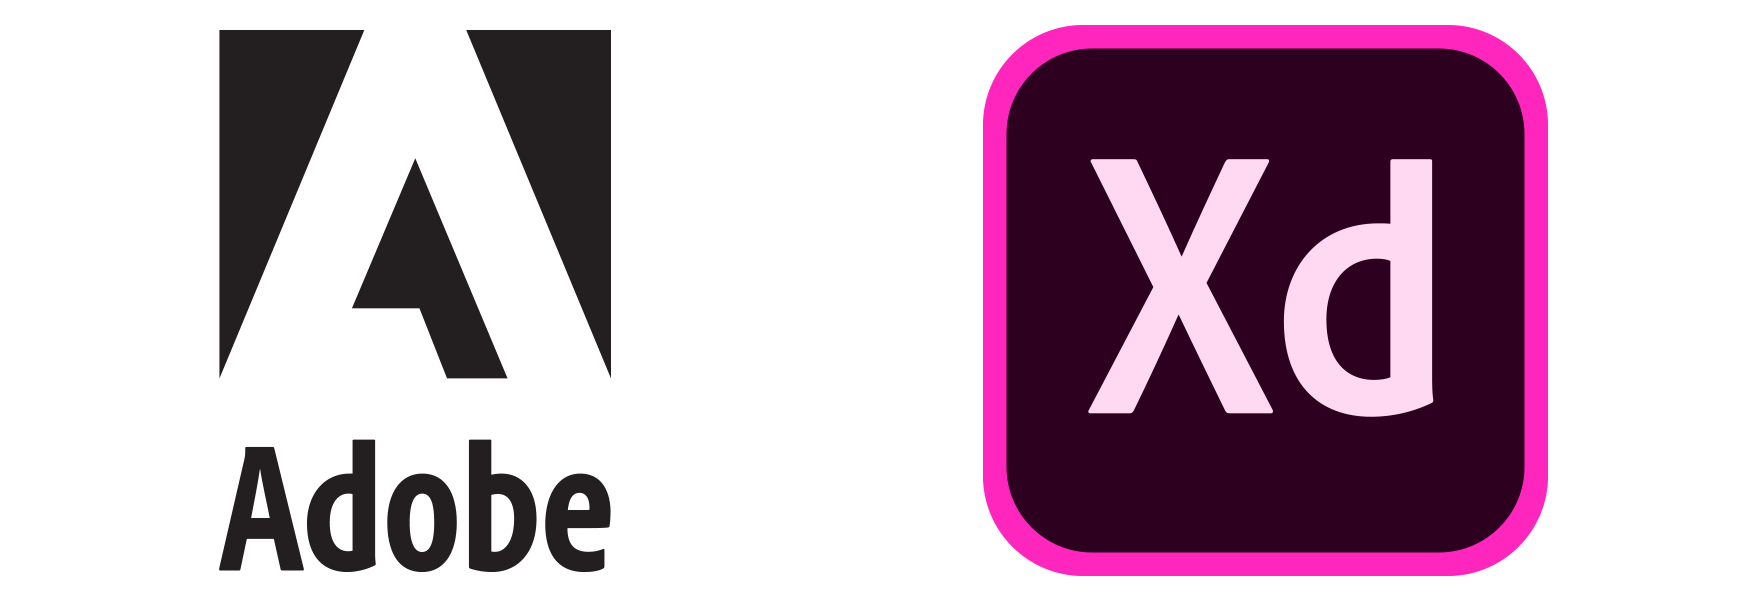 XD Logo - ADOBE XD • UX-DAY